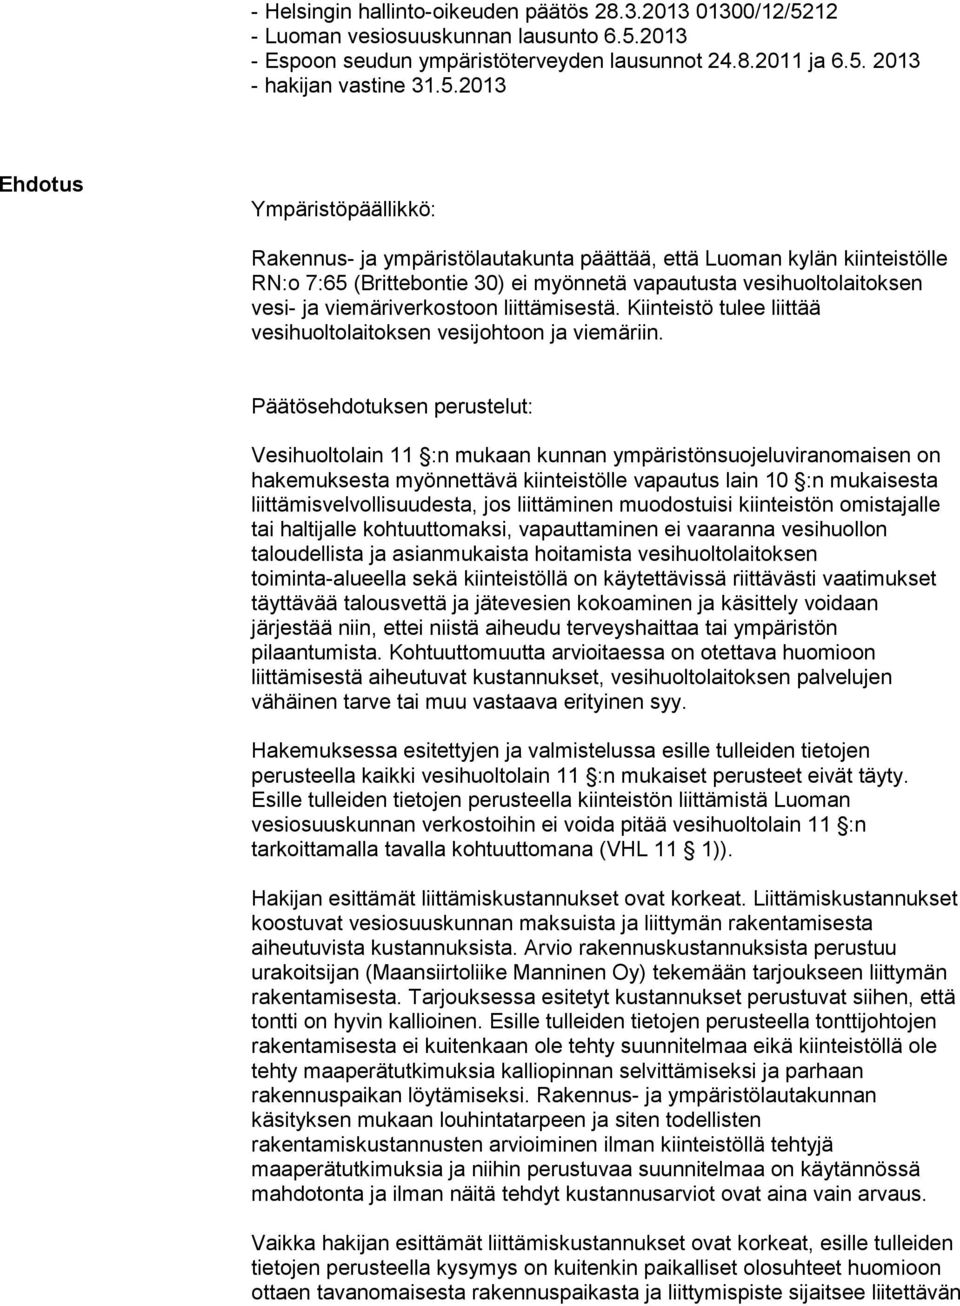 2013 - Espoon seudun ympäristöterveyden lausunnot 24.8.2011 ja 6.5.